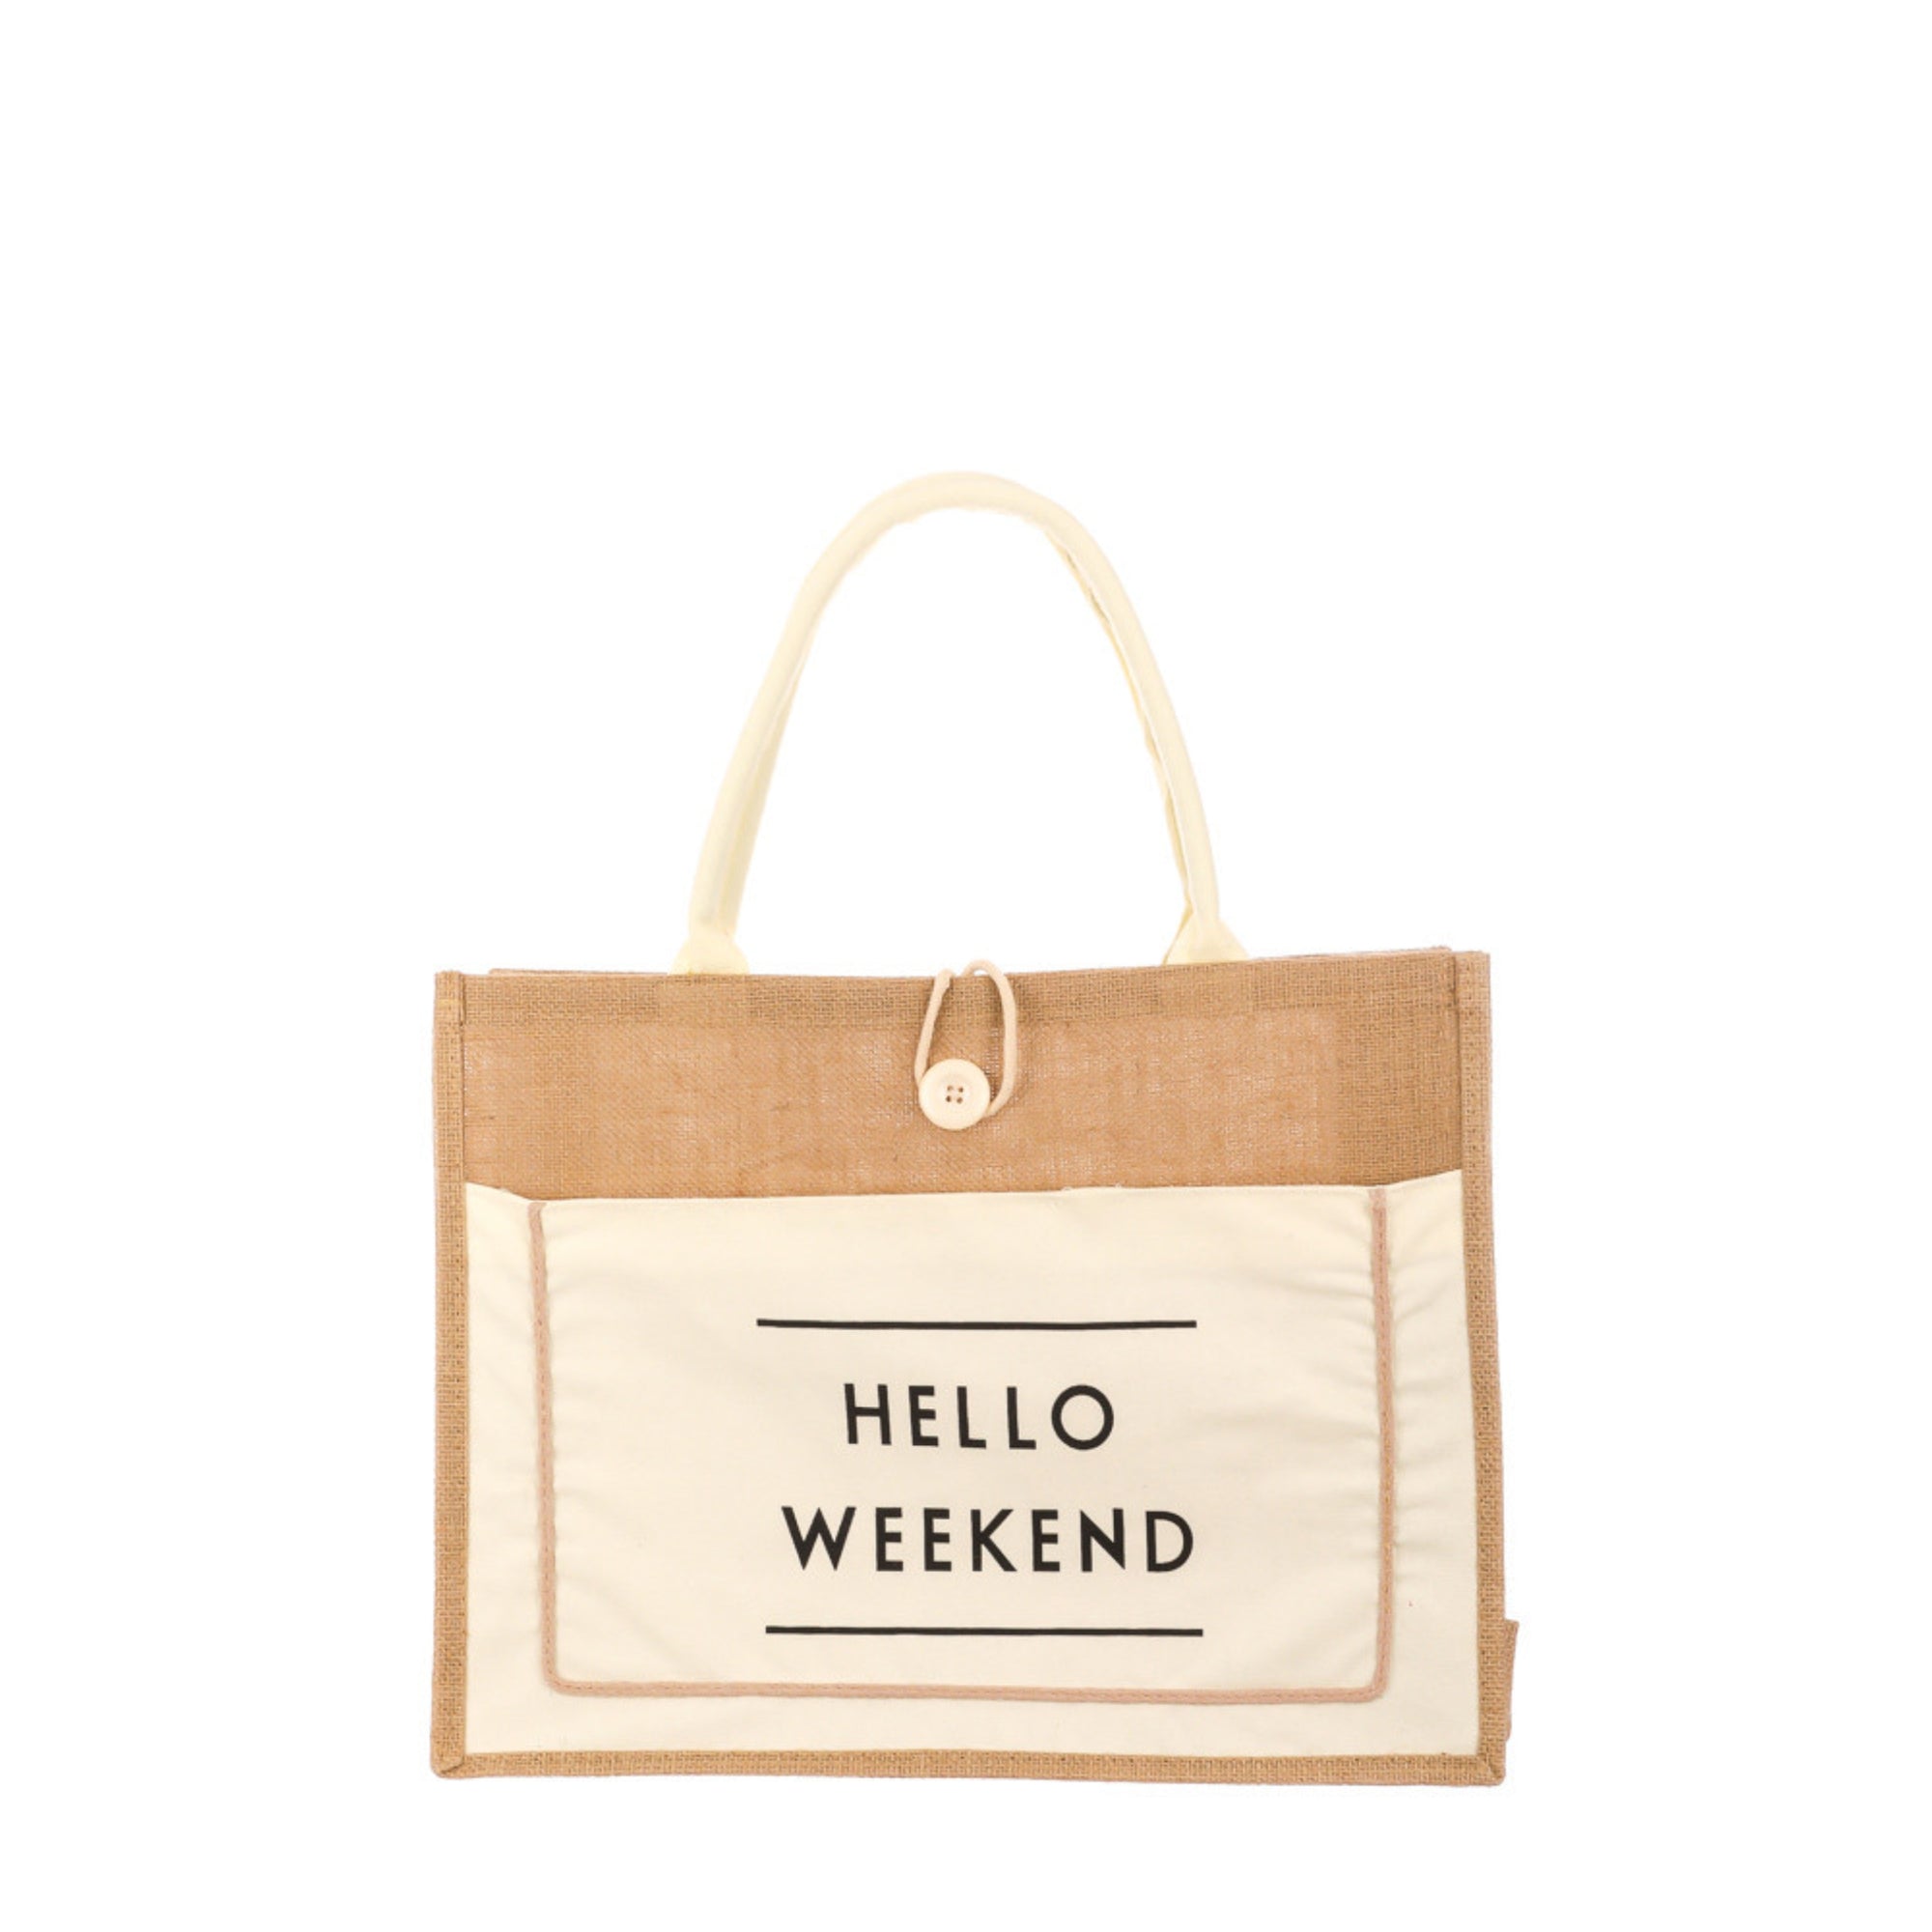 Burlap Hello Weekend Tote Bag.